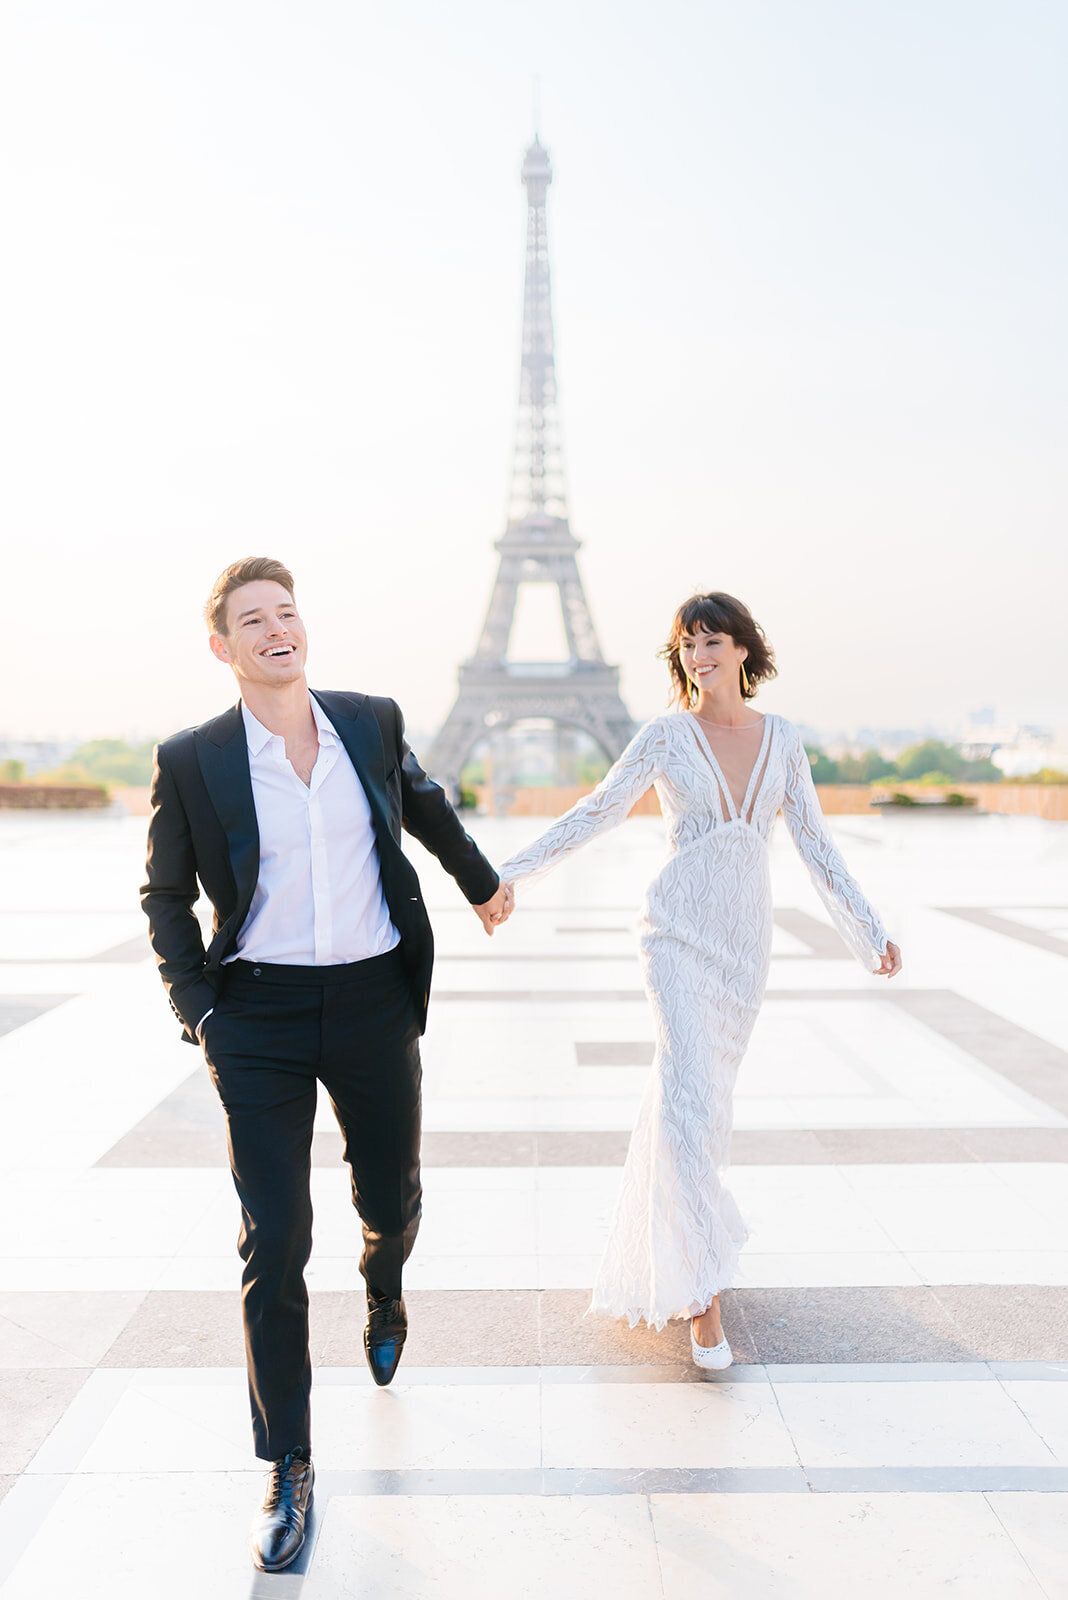 MorganeBallPhotography-WeddingEditorial-Paris2020-Trocadero-9-